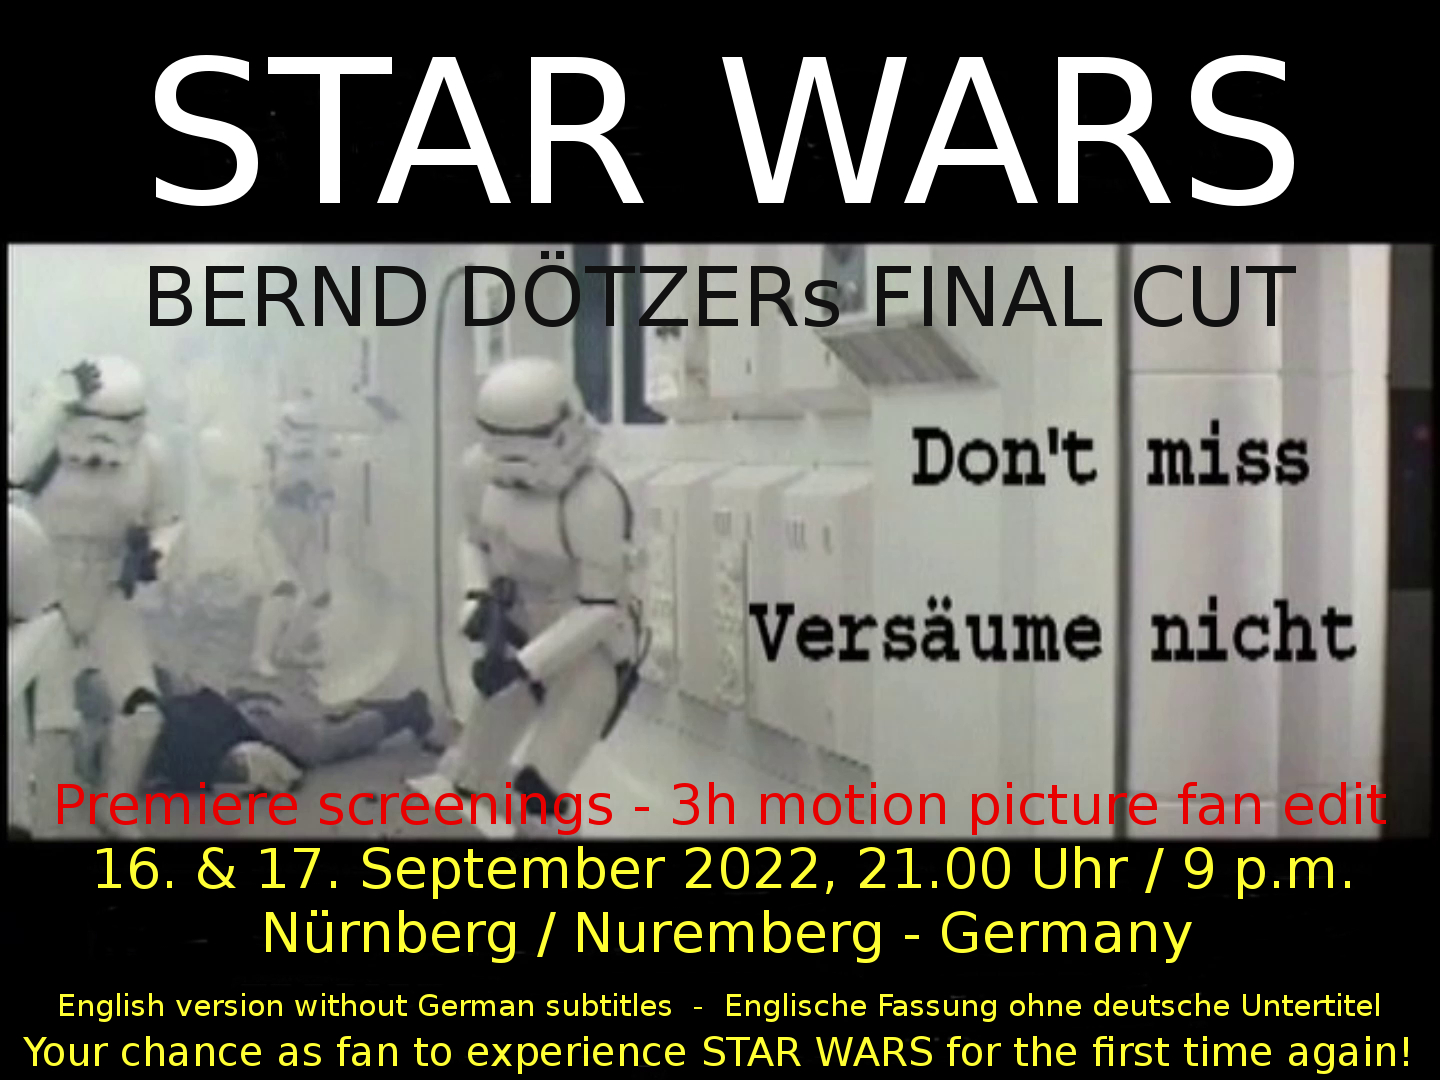 BDFC-Reminder 2022 Nürnberg + Datum.jpg